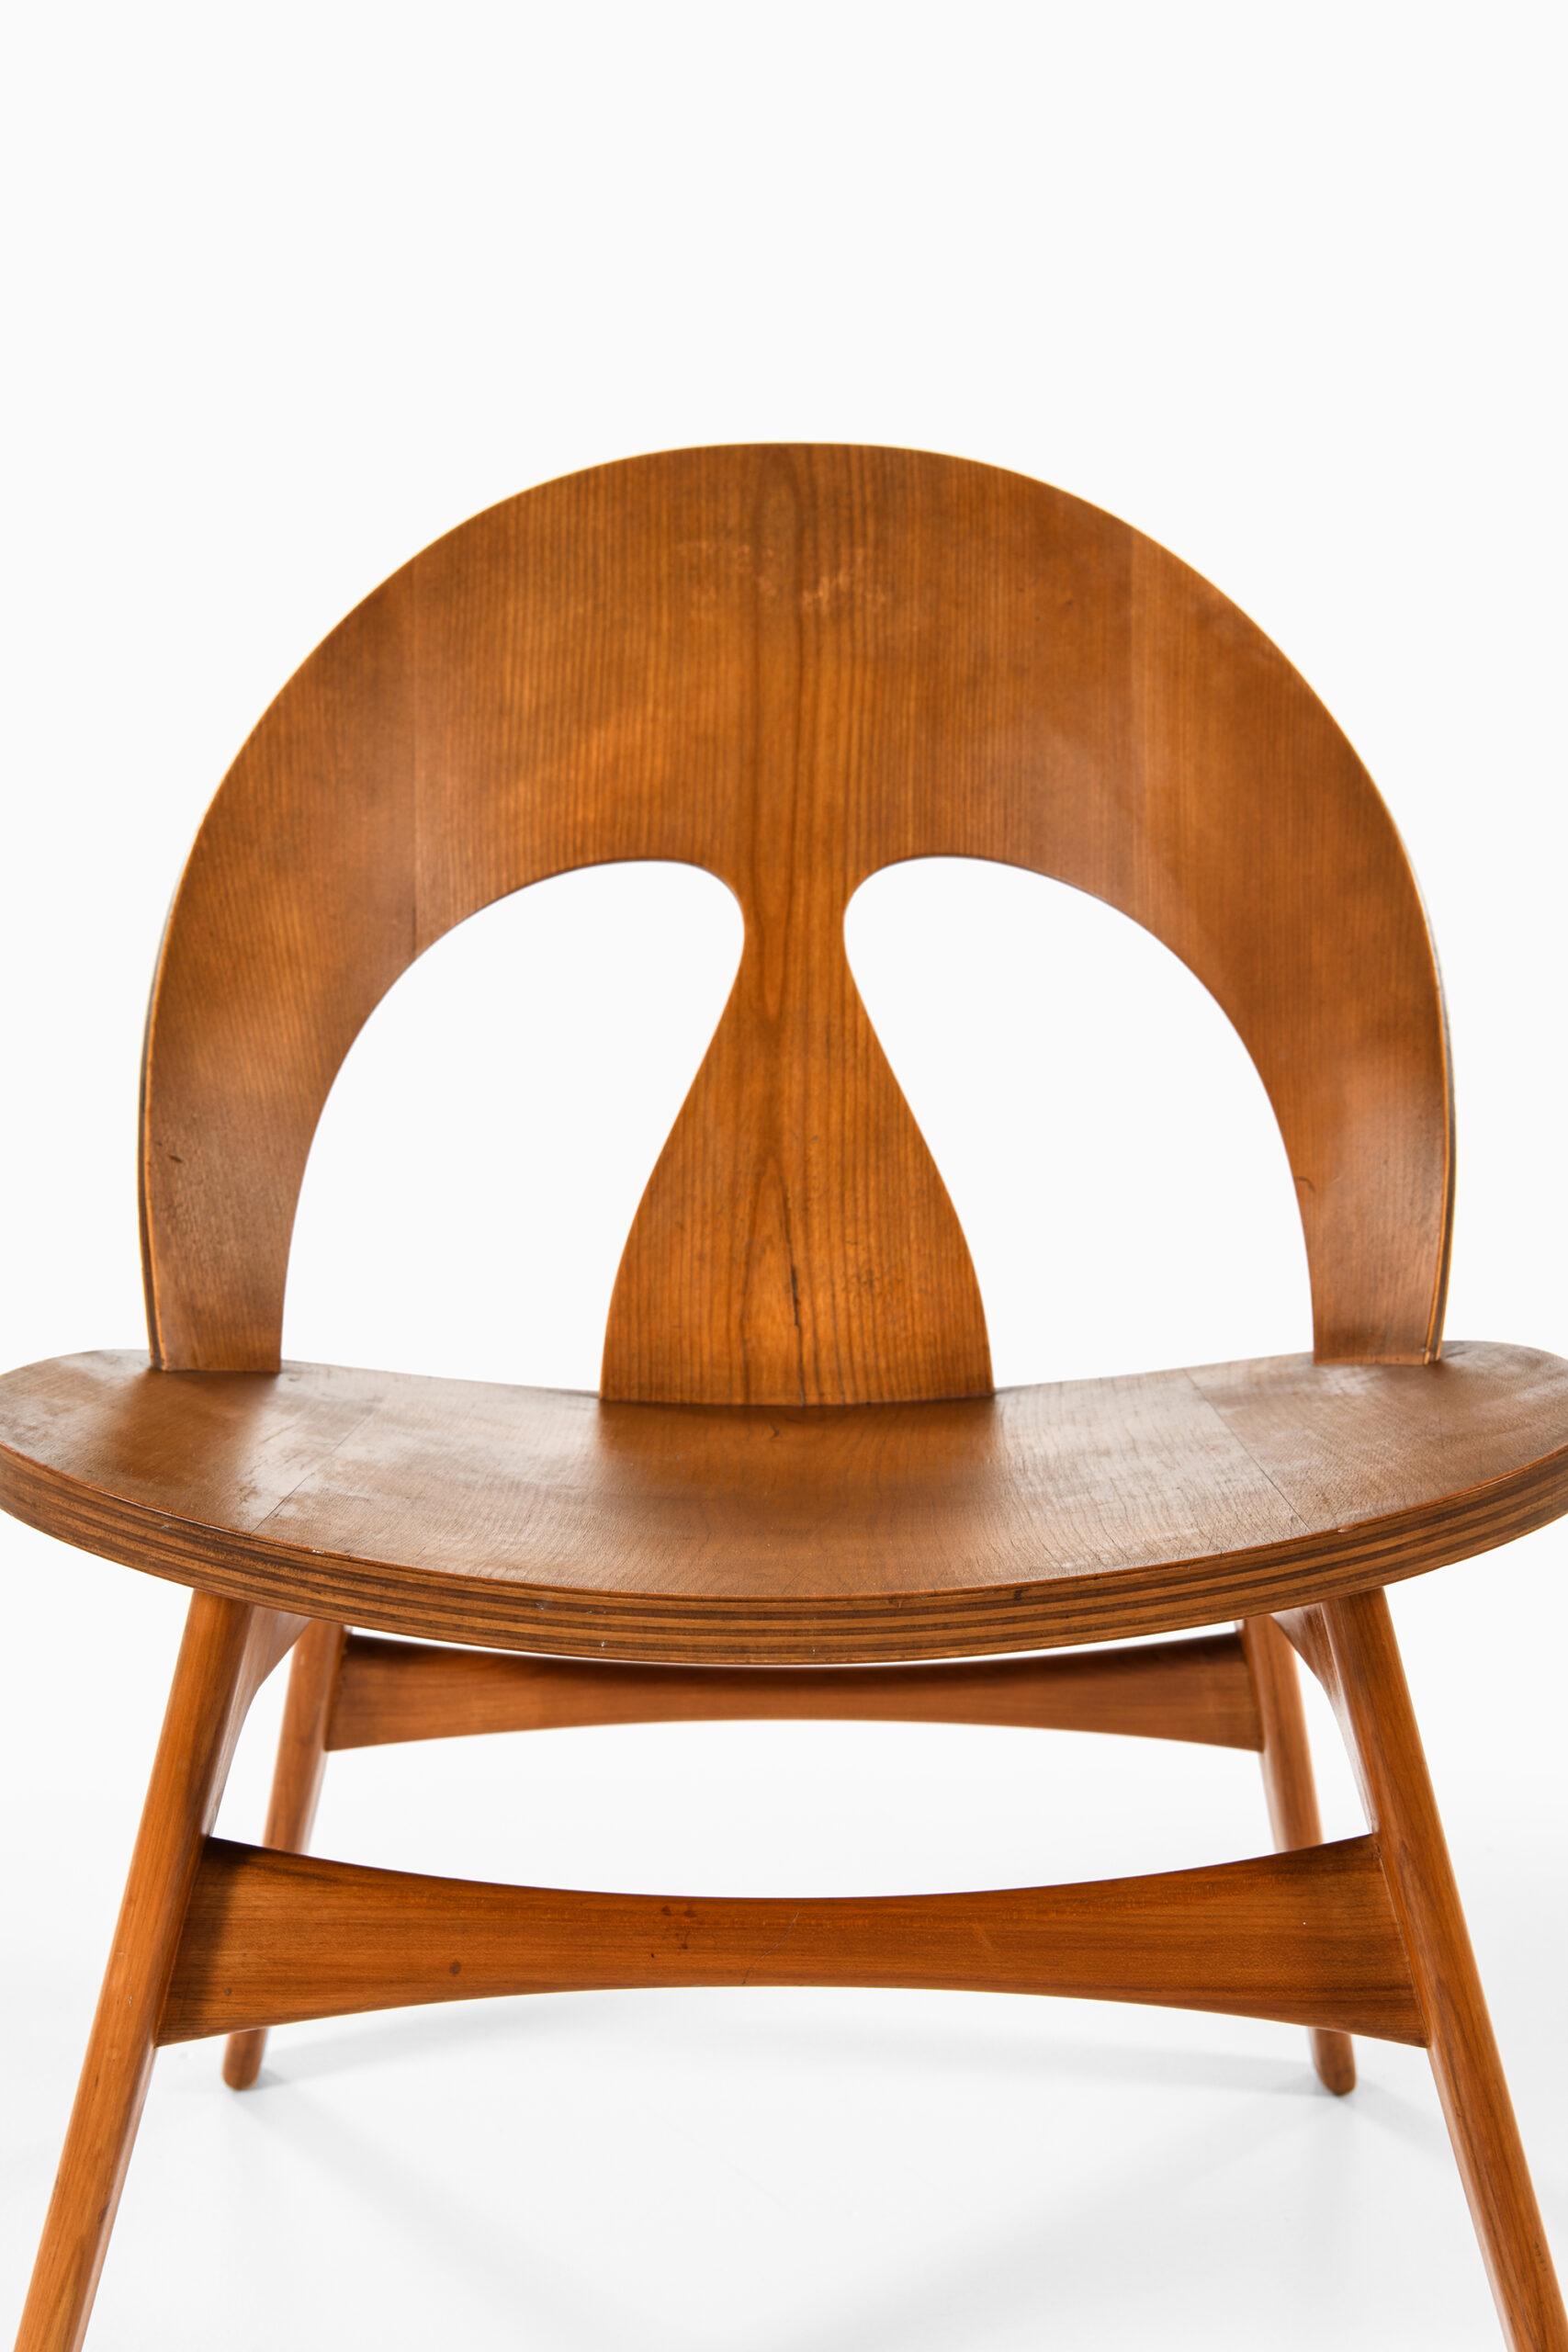 Très rare fauteuil conçu par Børge Mogensen. Fabriqué par l'ébéniste Erhard Rasmussen au Danemark.